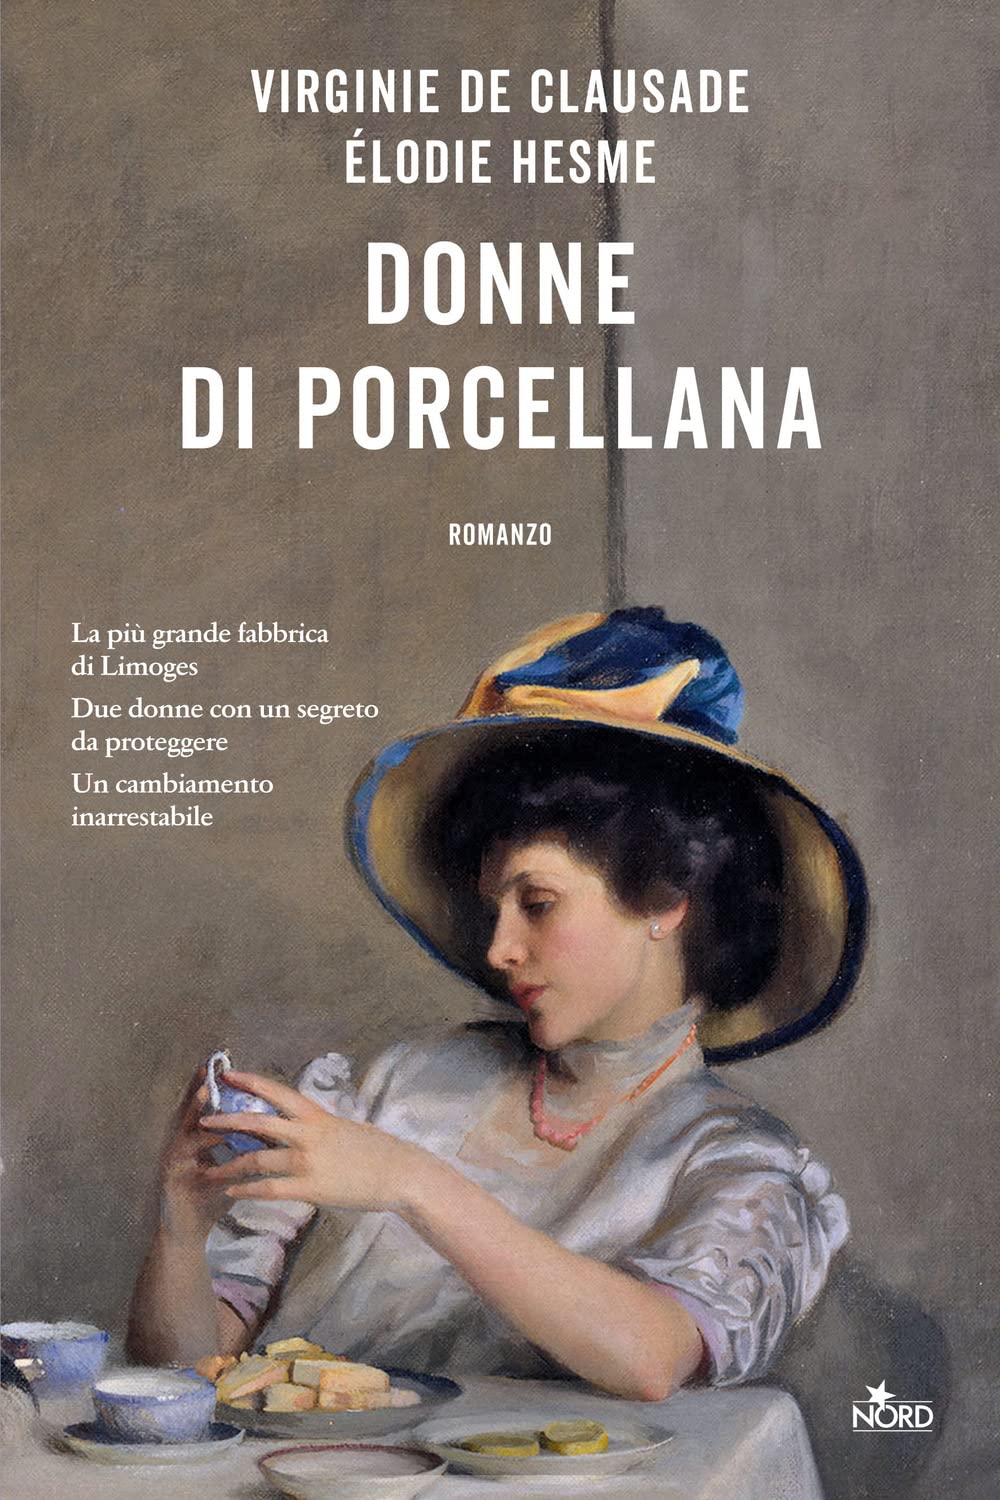 Libri De Clausade Virginie / Hesme Élodie - Donne Di Porcellana NUOVO SIGILLATO, EDIZIONE DEL 28/02/2023 SUBITO DISPONIBILE